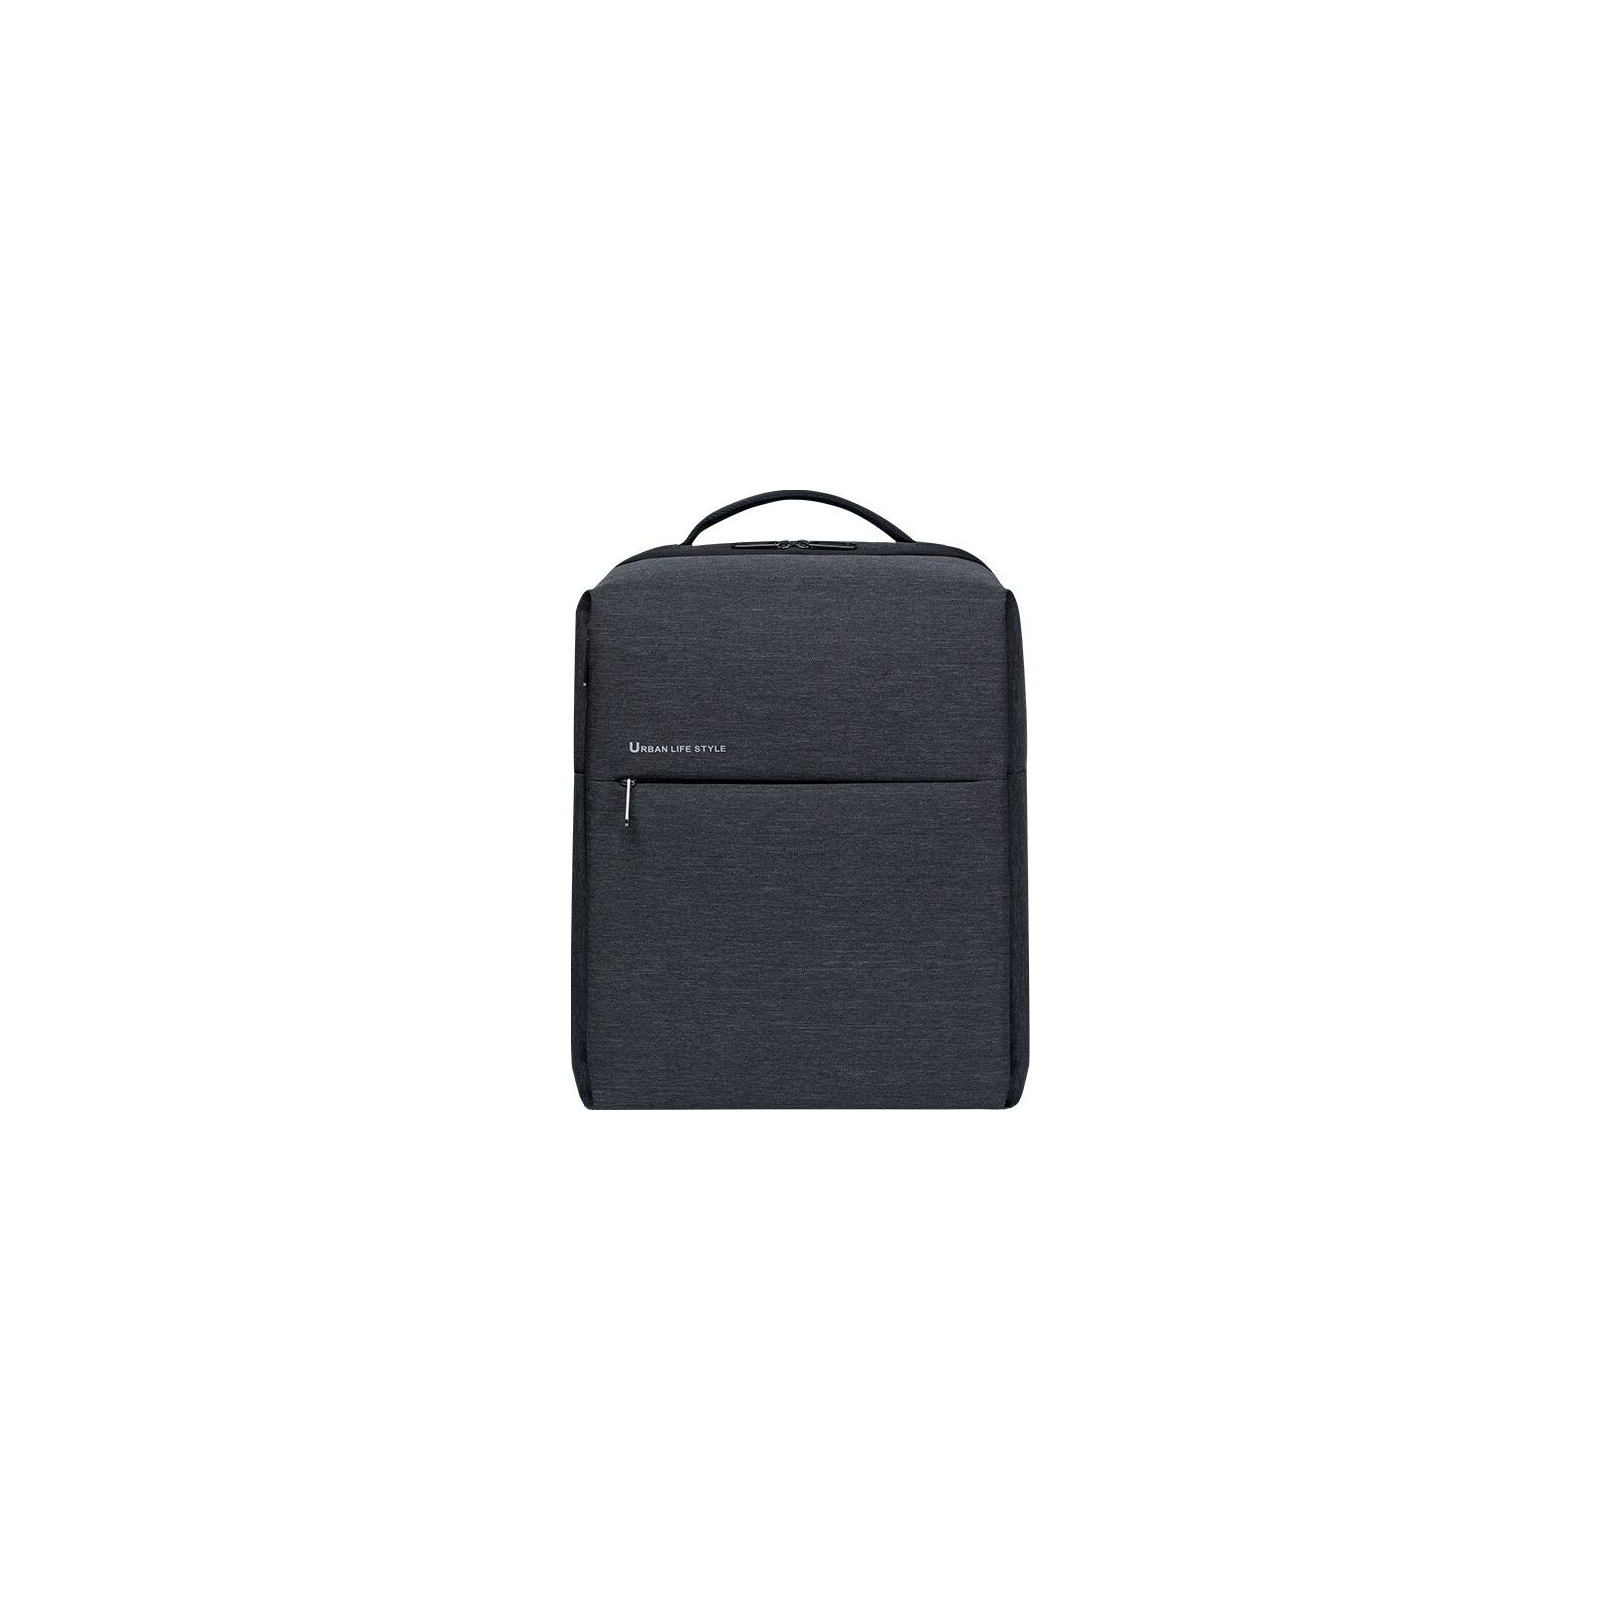 Рюкзак для ноутбука Xiaomi 15.6" City Backpack 2 (Dark Gray) (601201) изображение 3